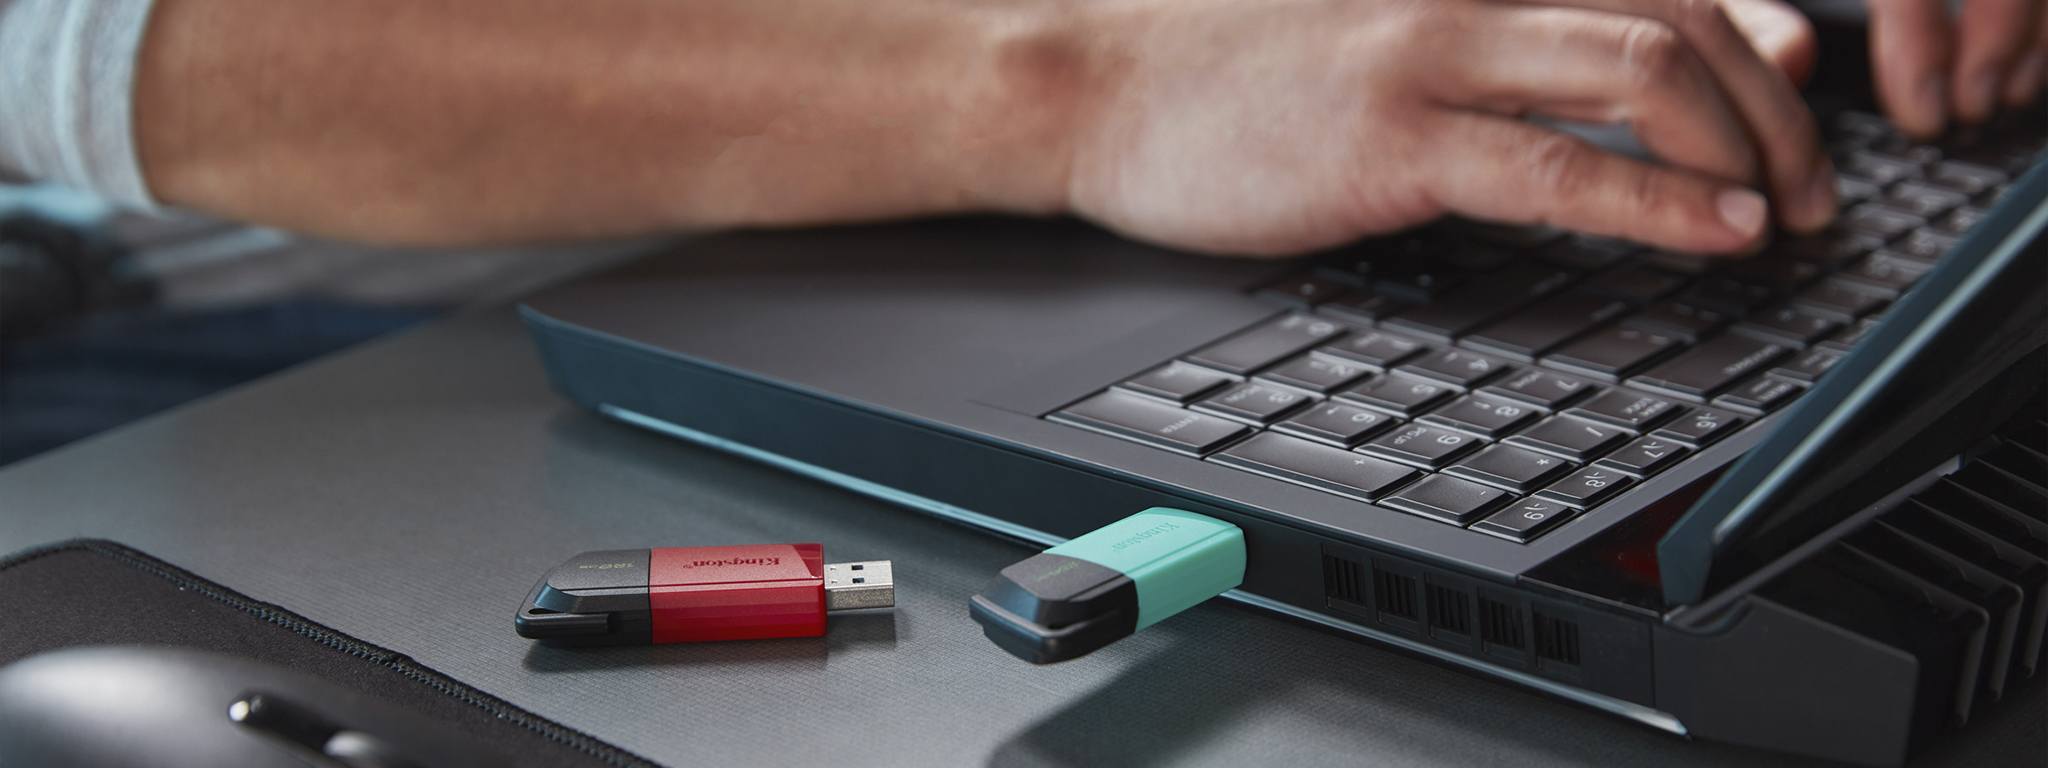 2 つの DT Exodia M USB フラッシュドライブ（1 つは緑色のキャップ、もう 1 つは赤色のキャップ）が机の端に置かれ、背景でノートパソコンを使用している人がいる